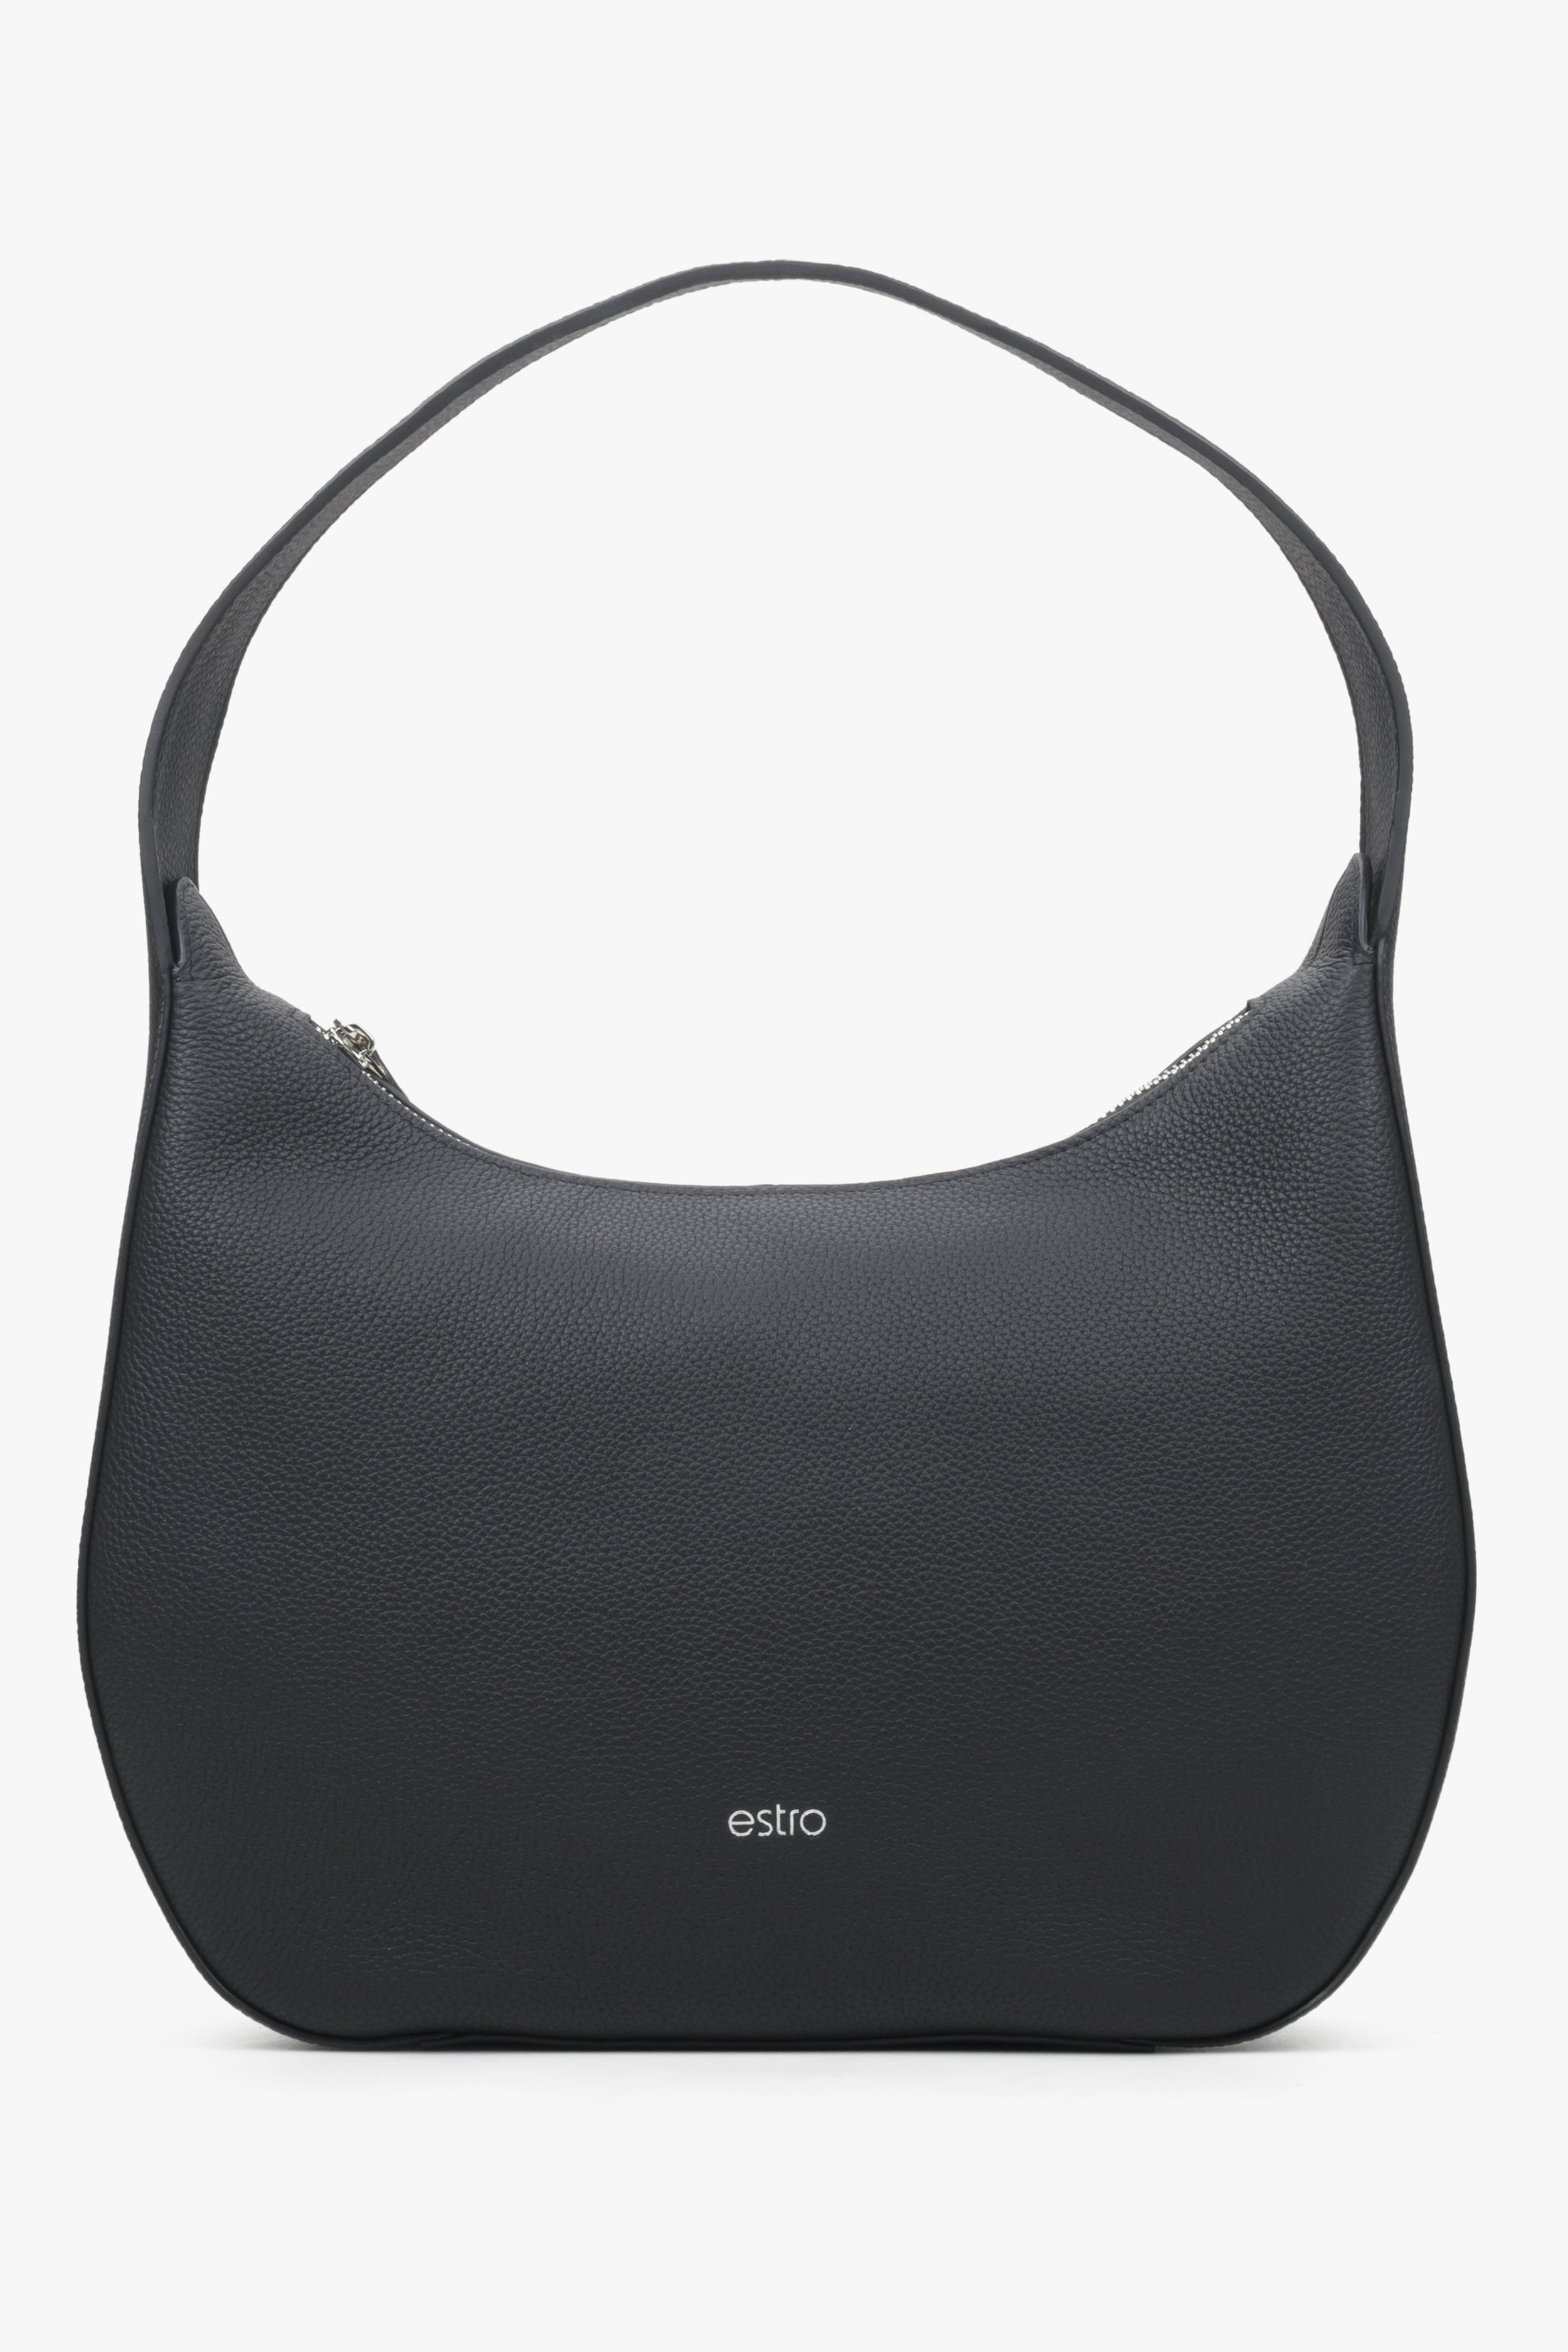 Estro: Czarna torebka damska typu półksiężyc ze skóry naturalnej